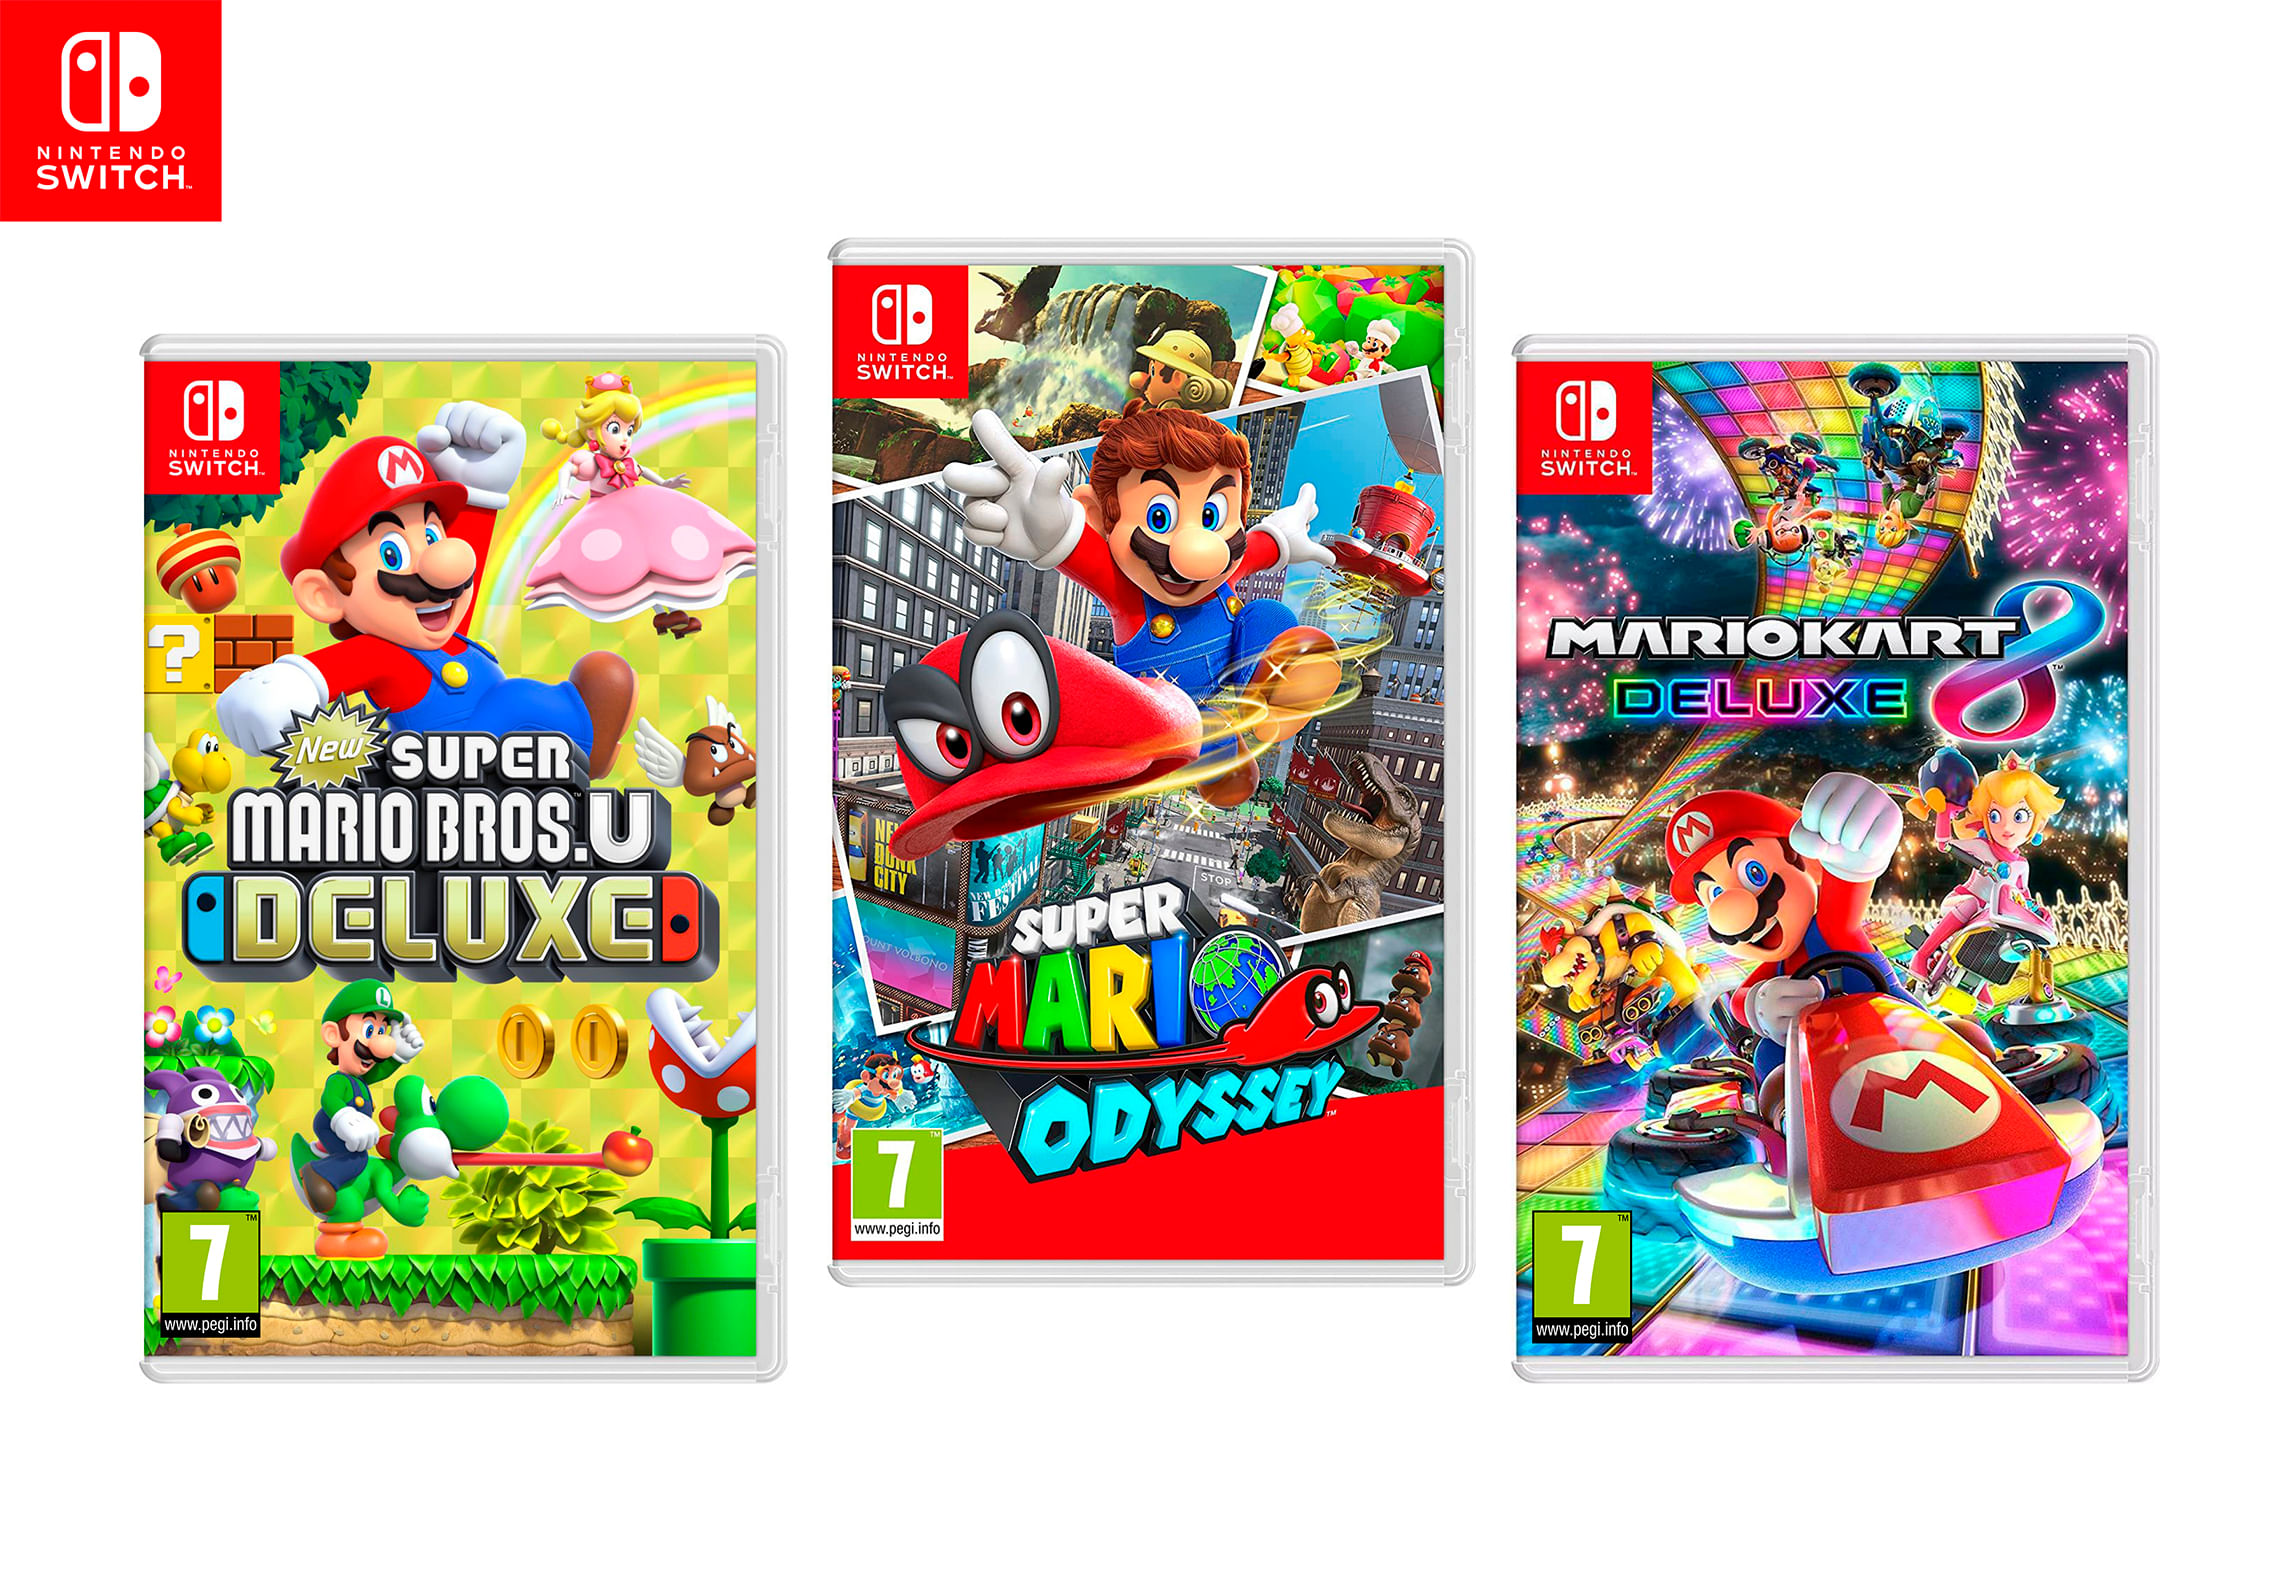 Juegos de Nintendo Switch: New Super Mario Bros U + Super Mario Odyssey + Mario Kart 8 Deluxe